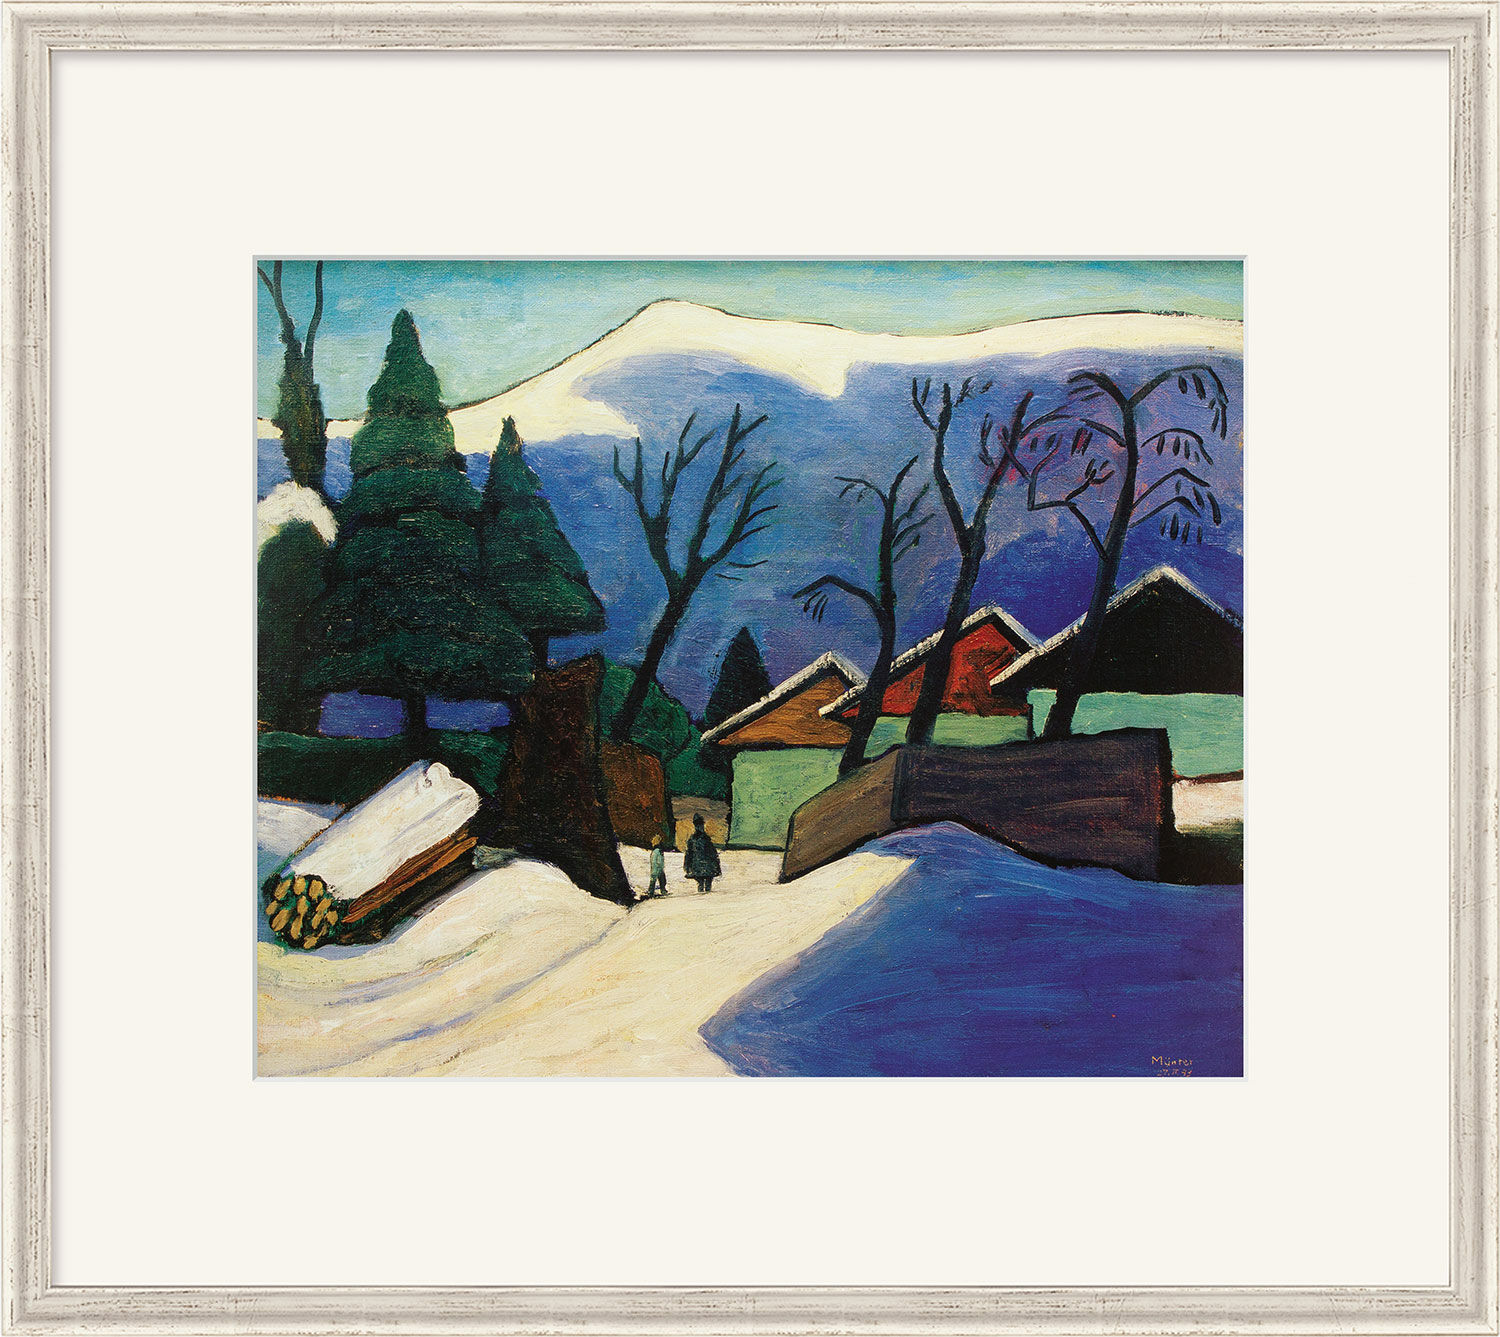 Billede "Tre huse i sneen" (1933), indrammet von Gabriele Münter